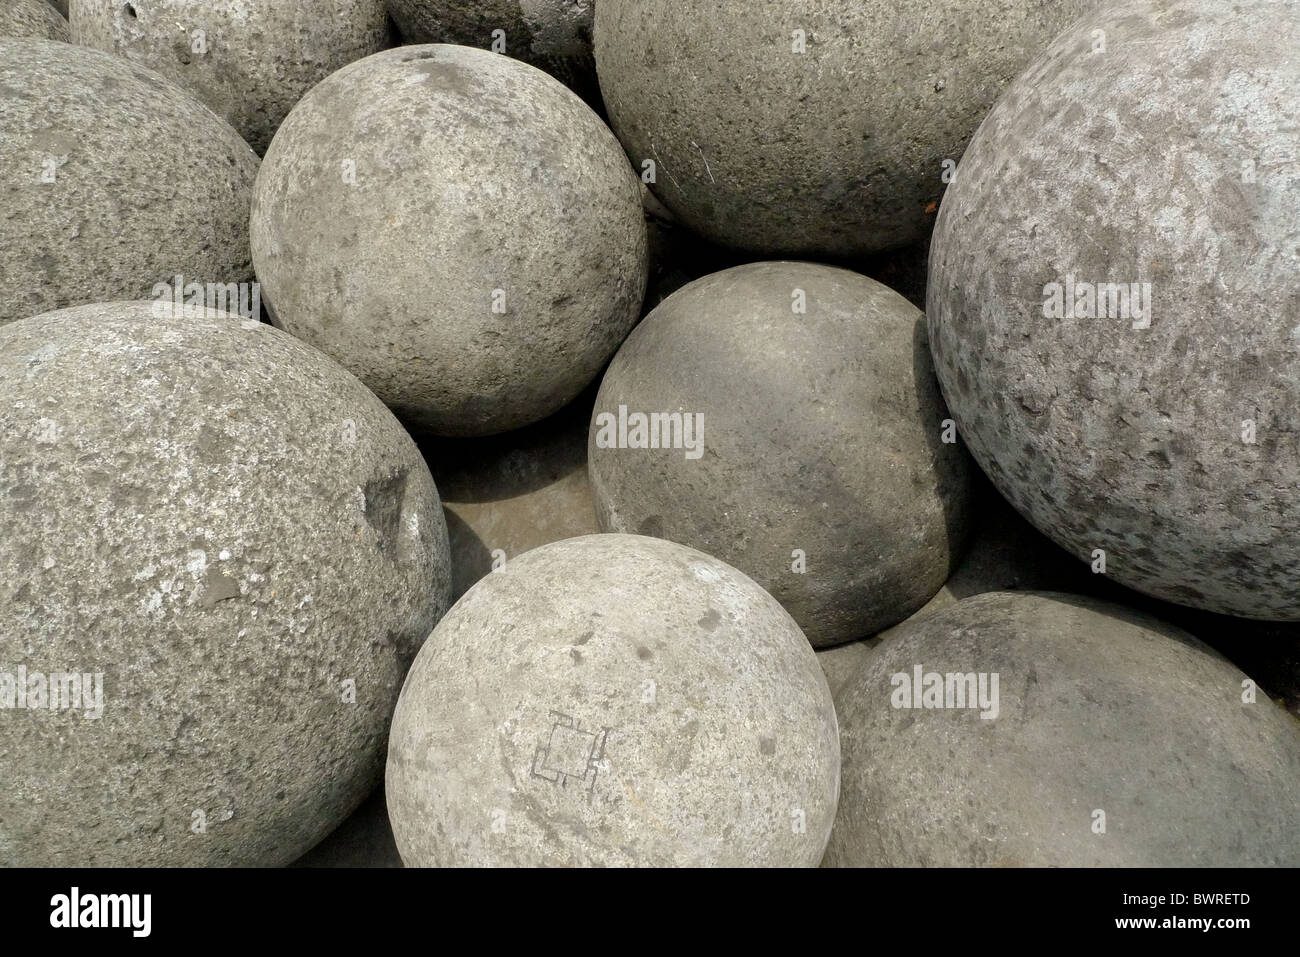 Boules de pierre, de différentes tailles et poids. Banque D'Images